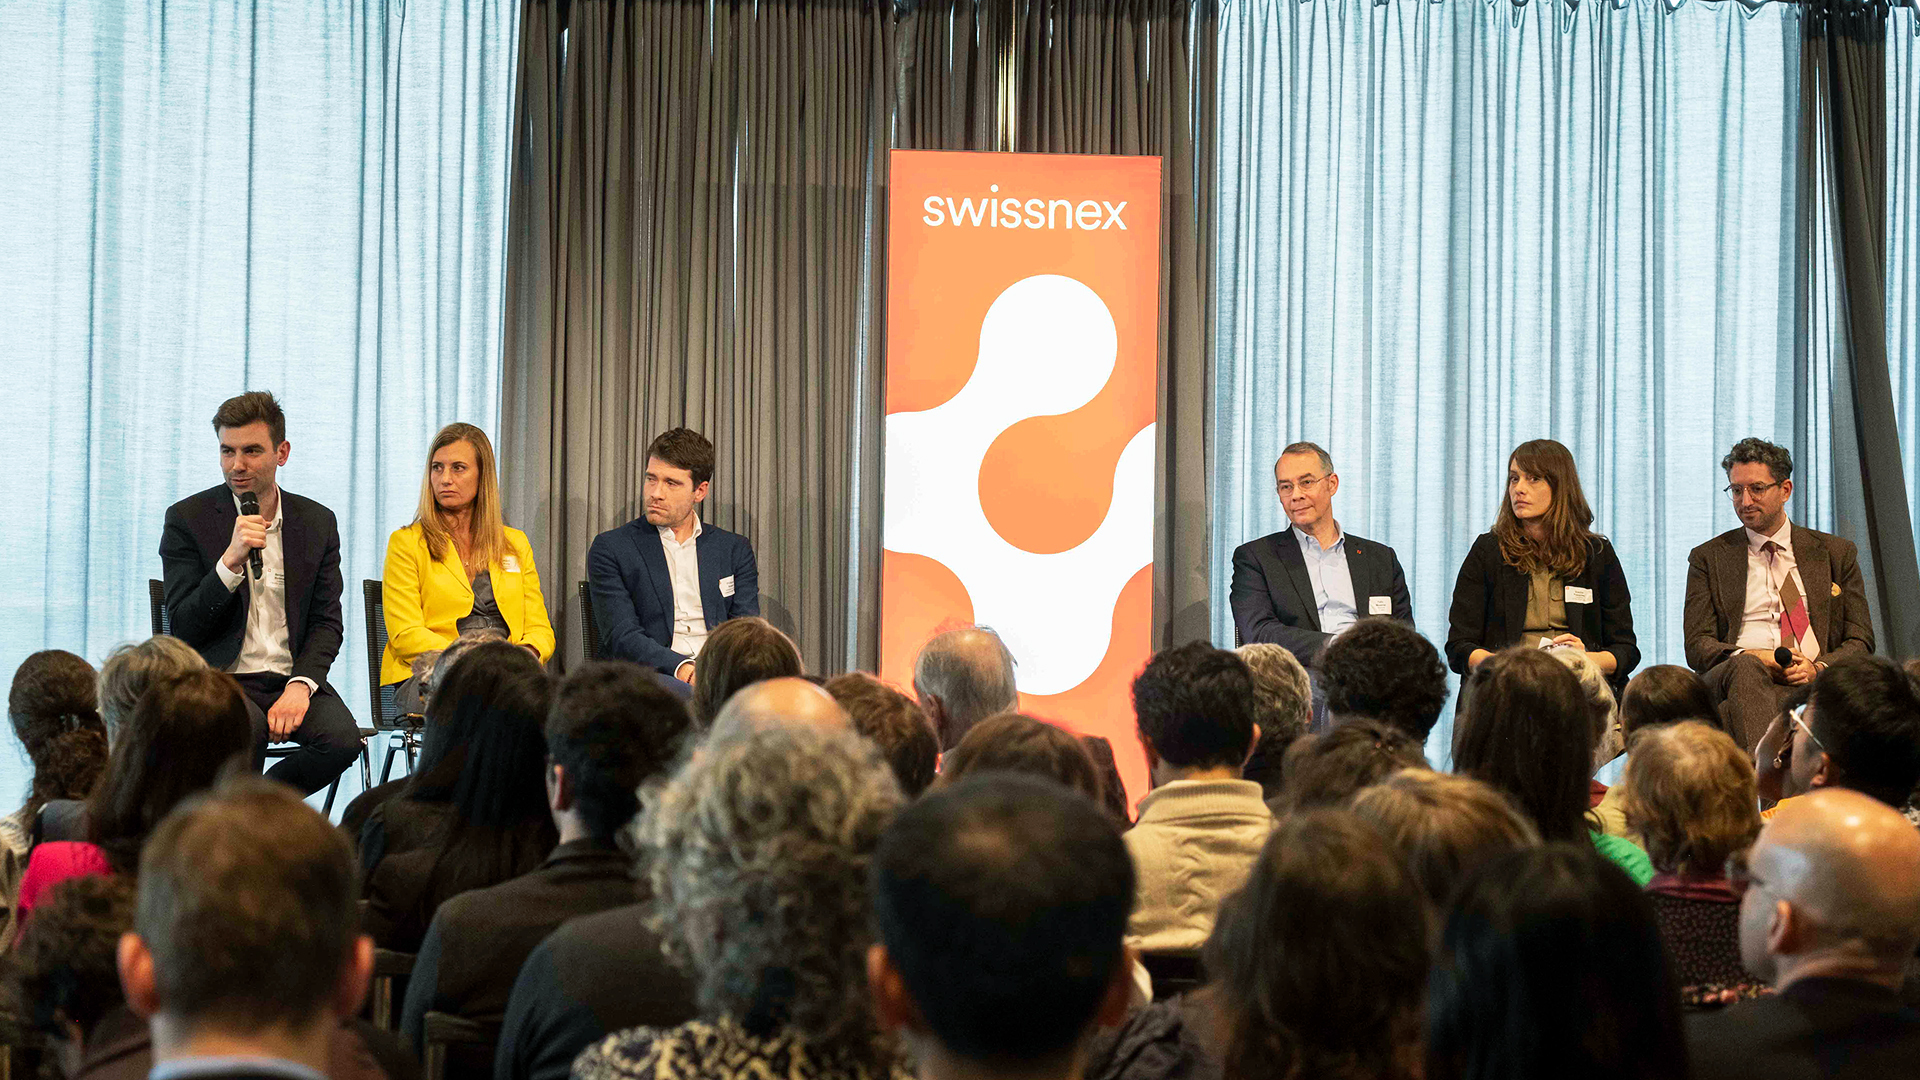 Sechs Swissnex-CEOs sitzen auf der Bühne um ein rotes Banner mit dem Swissnex-Logo. Unten sind die Köpfe des Publikums zu sehen, der Hintergrund der Bühne ist grau.